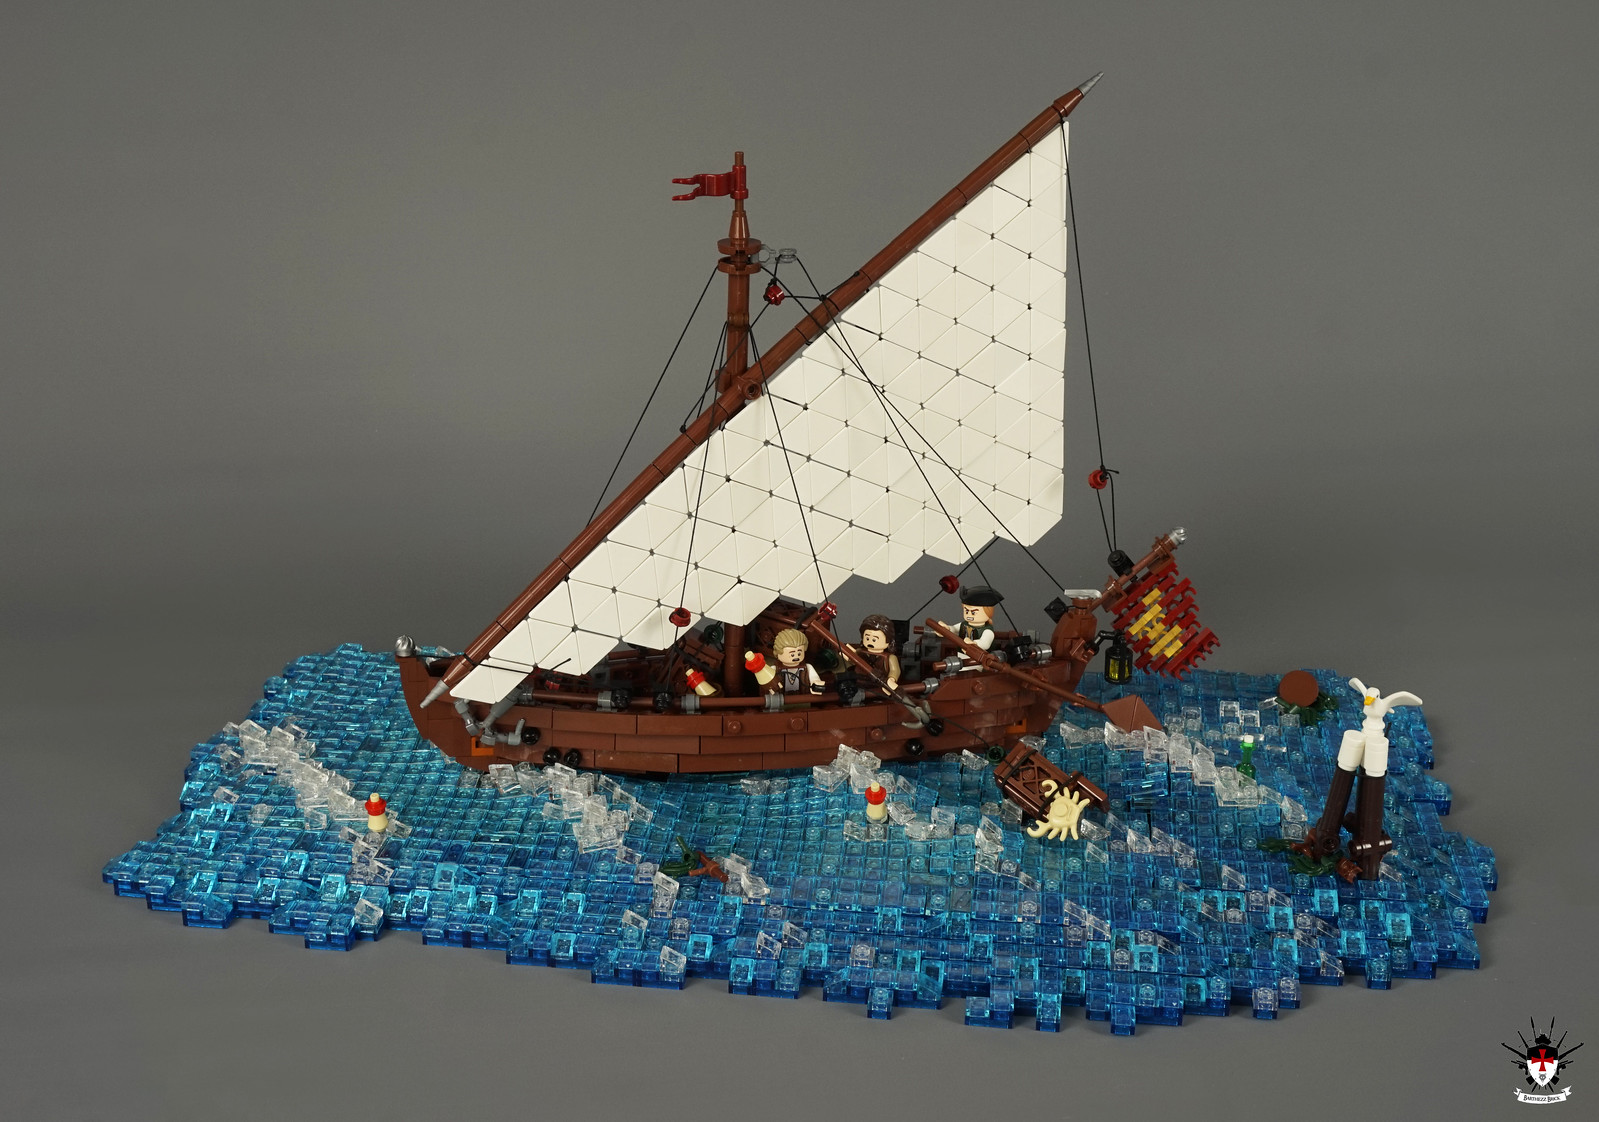 Venice 1486 - Fishing Sailship (main)